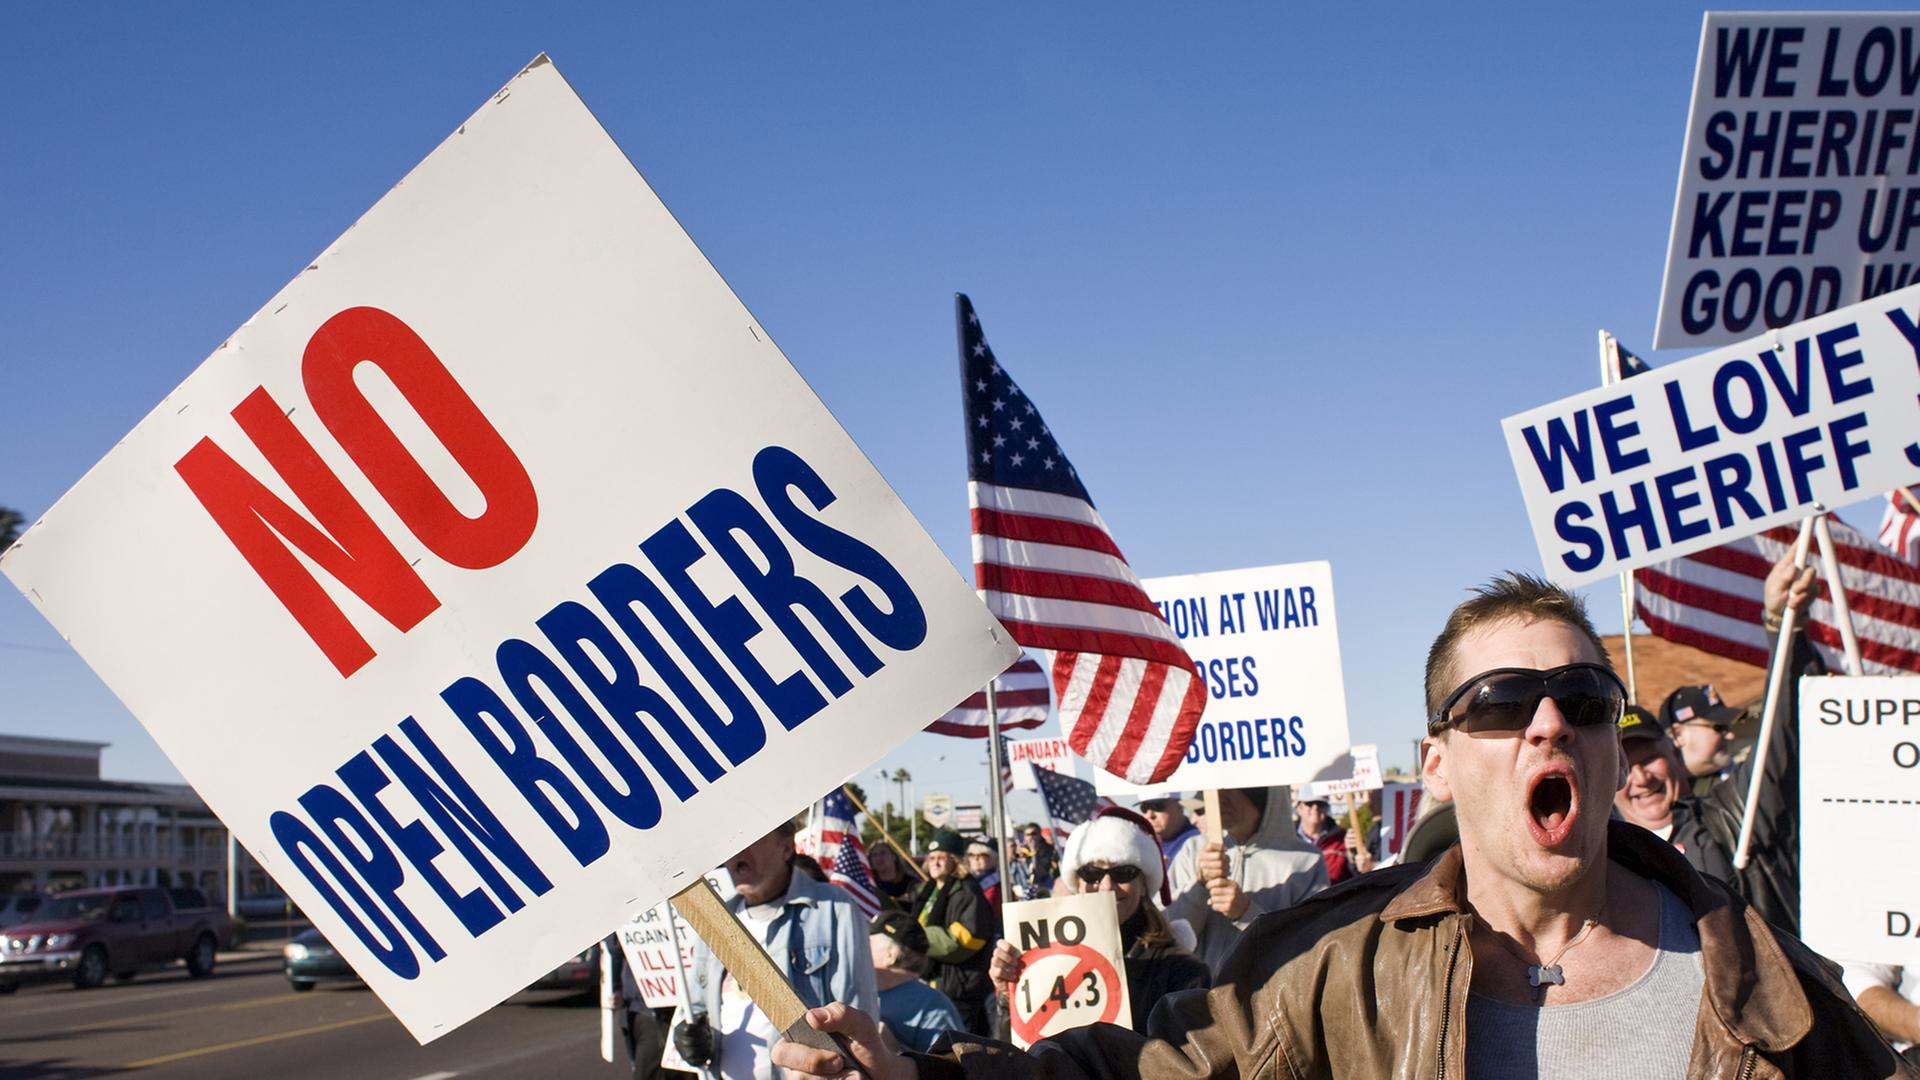 Demonstration in Phoenix gegen Immigration in die USA. "No open borders" steht auf einem Protestplakat, amerikanische Flaggen werden geschwungen.